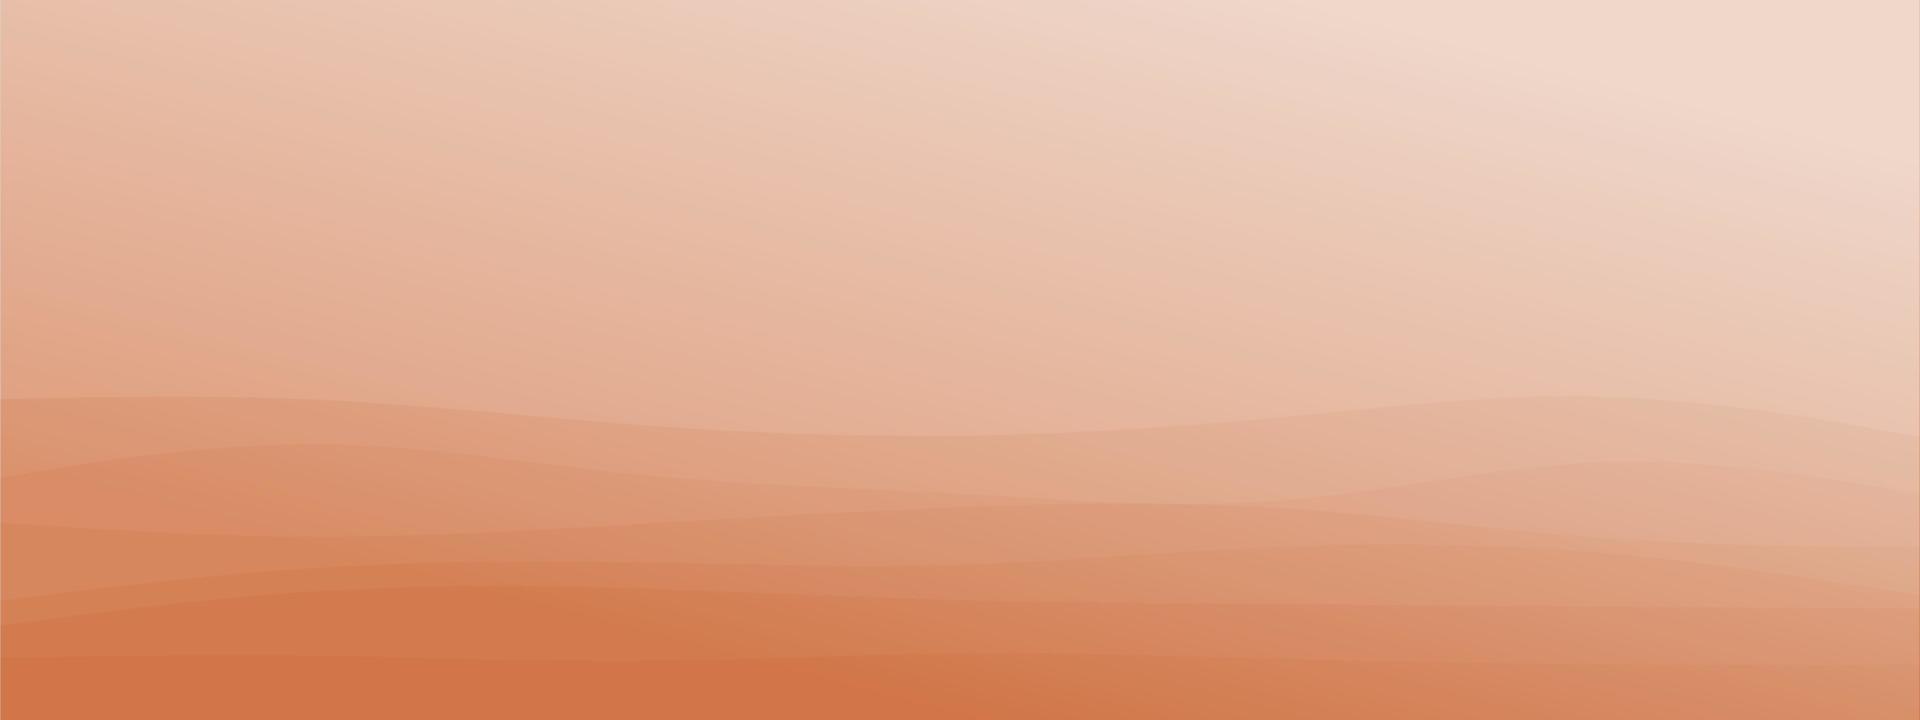 abstrato onda fluida linha geométrica minimalista moderno fundo gradiente combinado cor delicada. modelo moderno para site de página de destino de cartão de visita brochura. ilustração vetorial eps 10 vetor